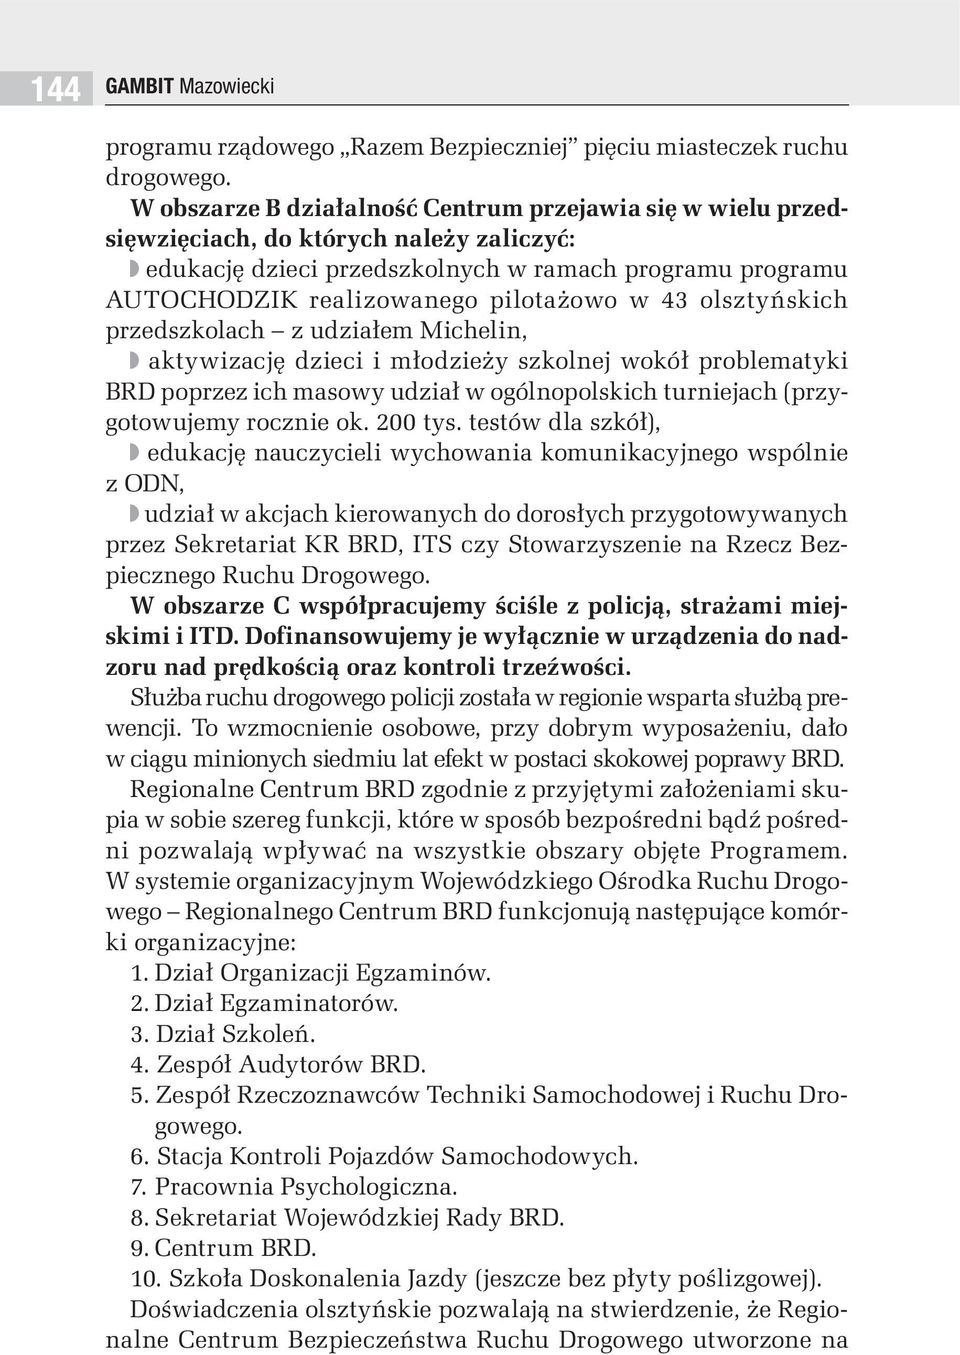 43 olsztyńskich przedszkolach z udziałem Michelin, aktywizację dzieci i młodzieży szkolnej wokół problematyki BRD poprzez ich masowy udział w ogólnopolskich turniejach (przygotowujemy rocznie ok.